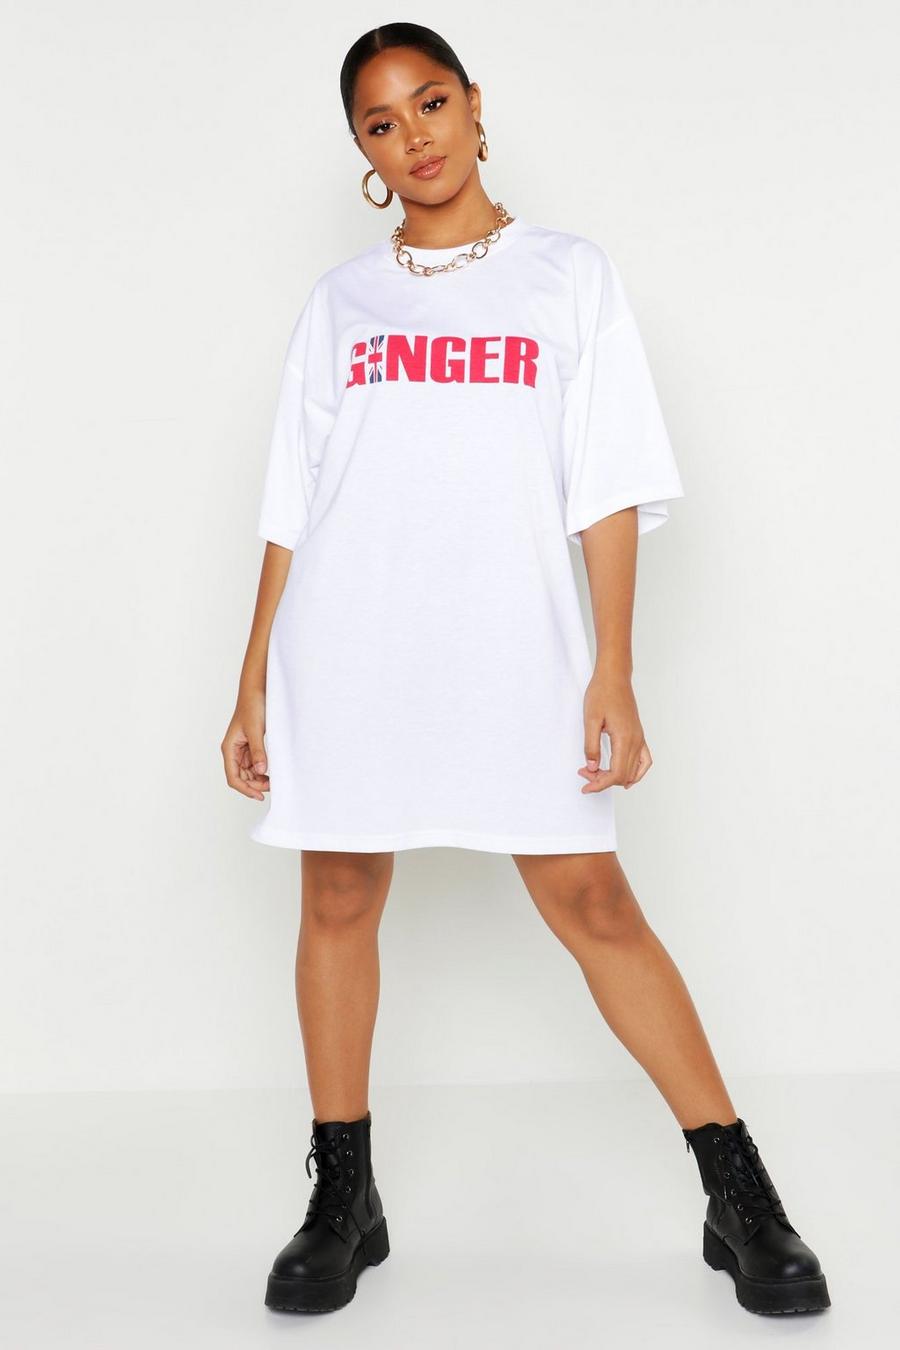 Vestido estilo camiseta con eslogan "Ginger" image number 1